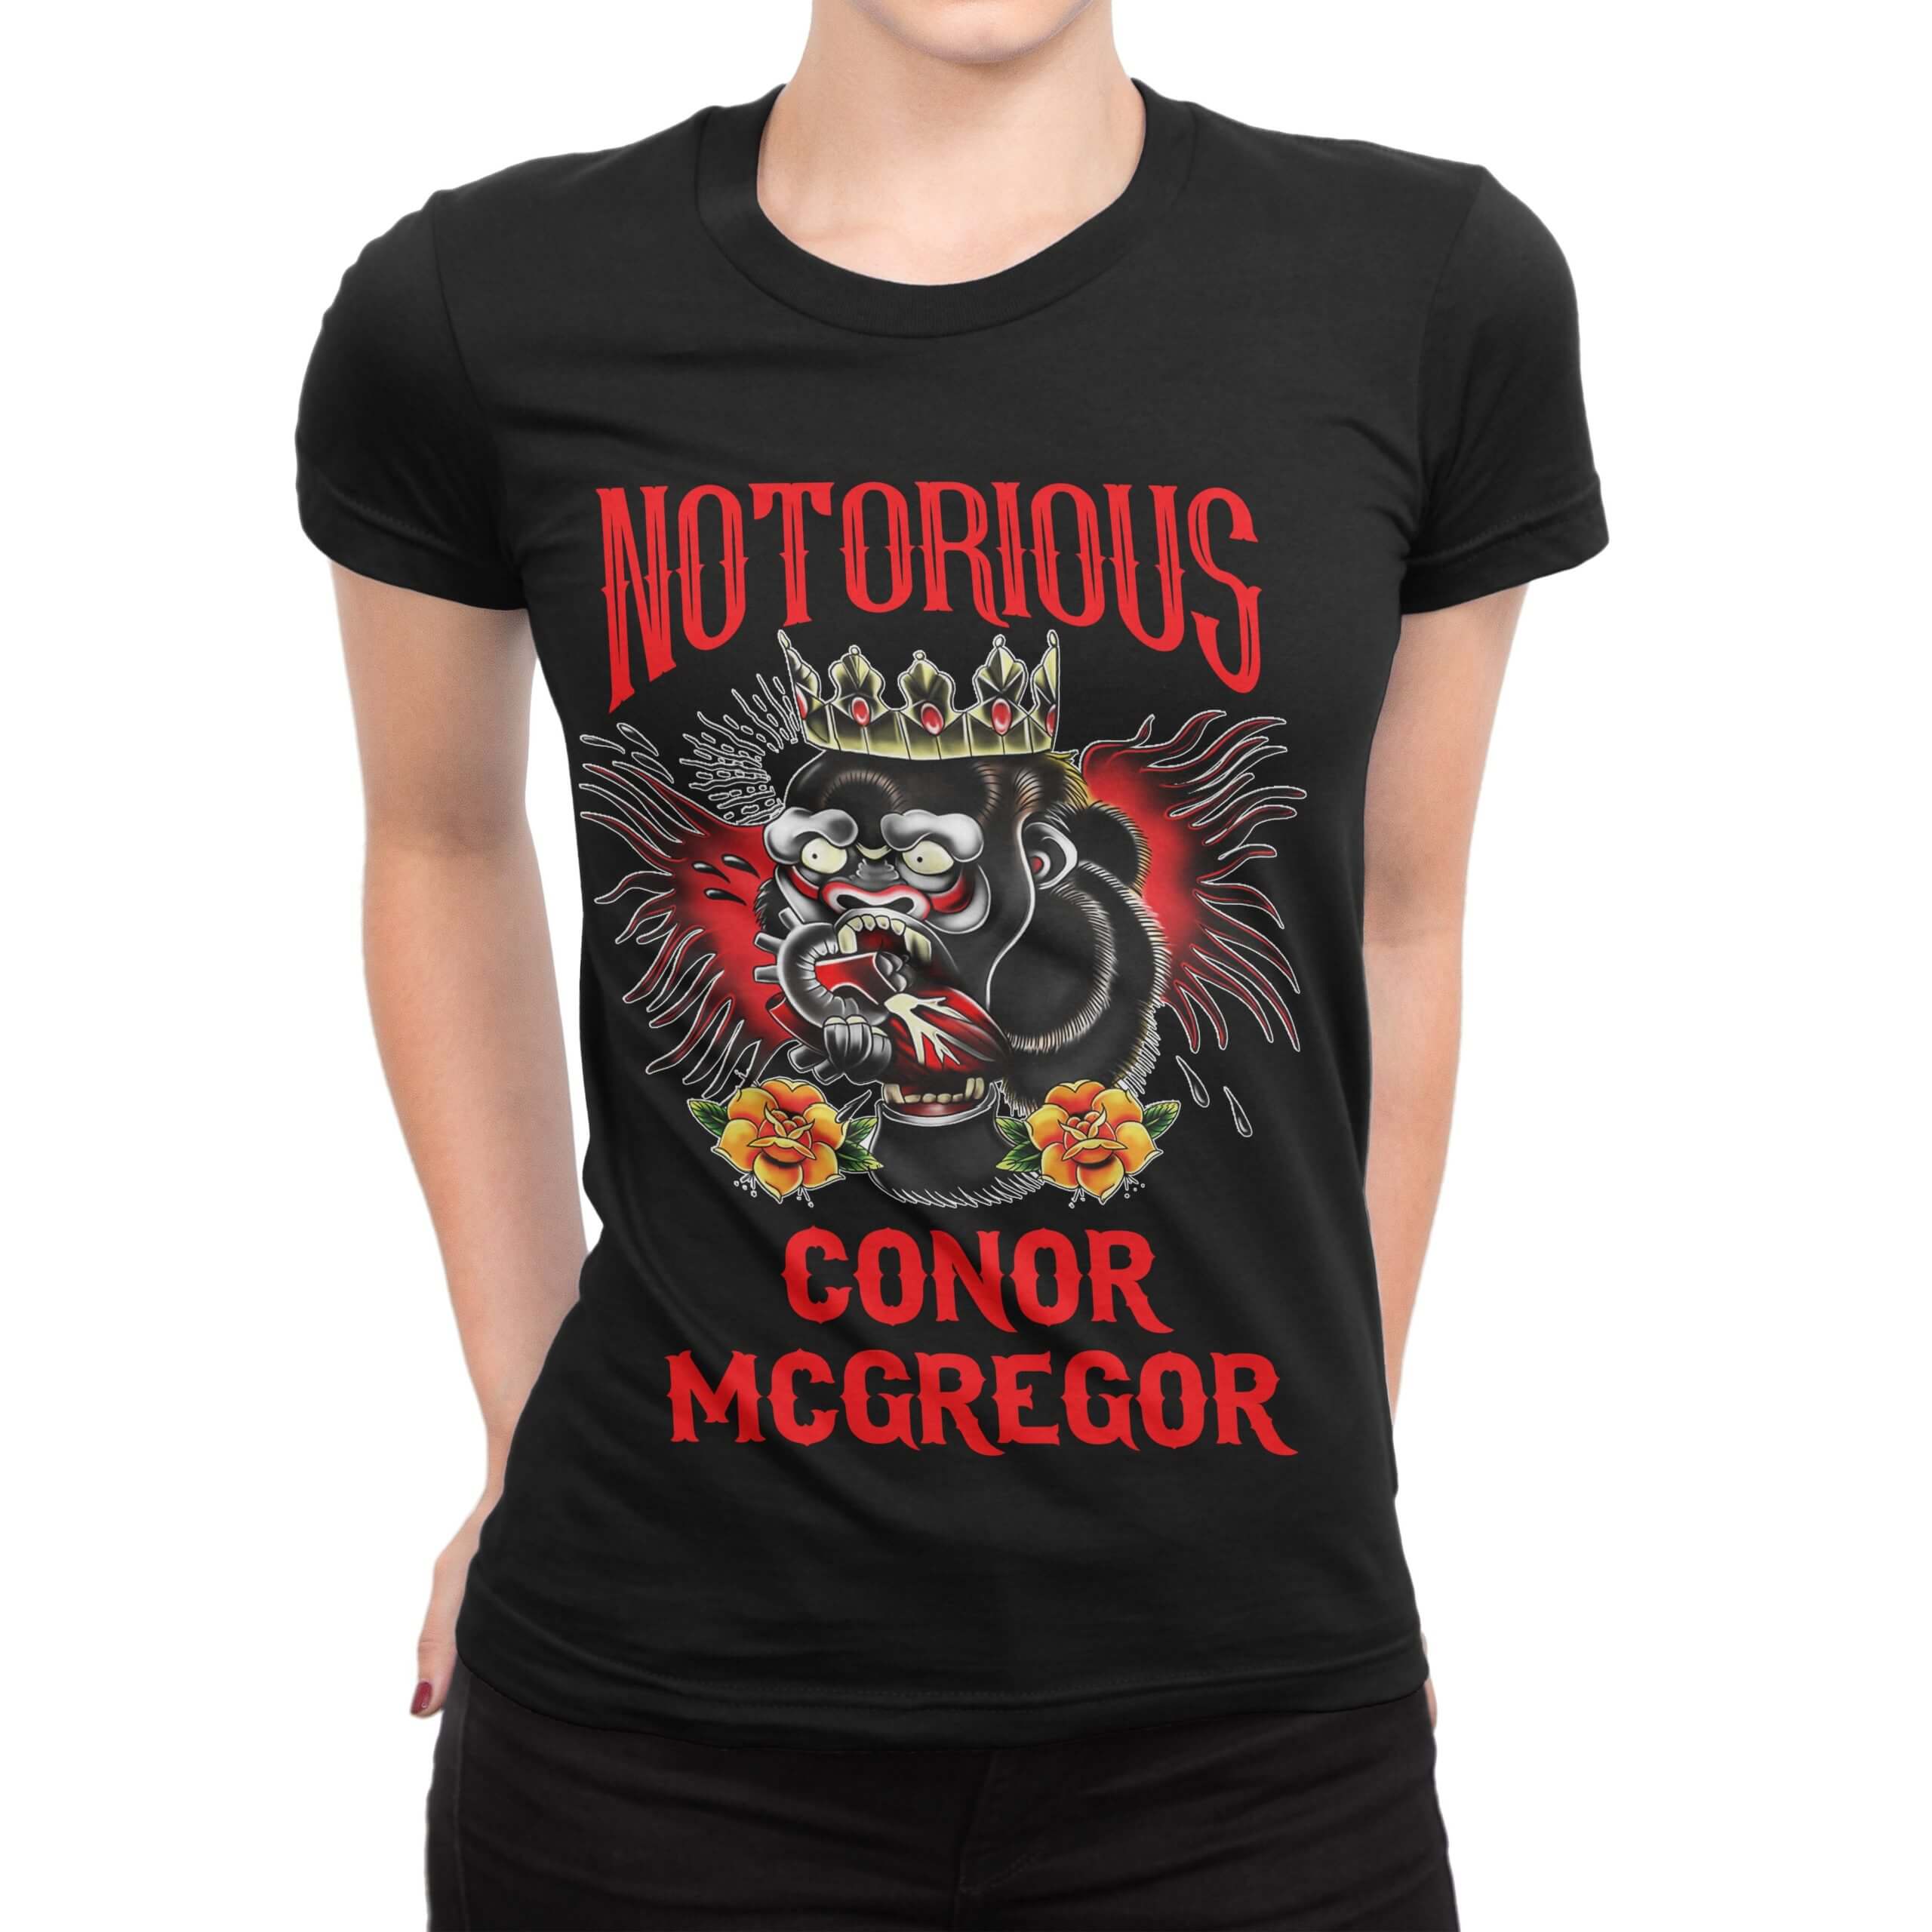 conor mcgregor t shirt women's